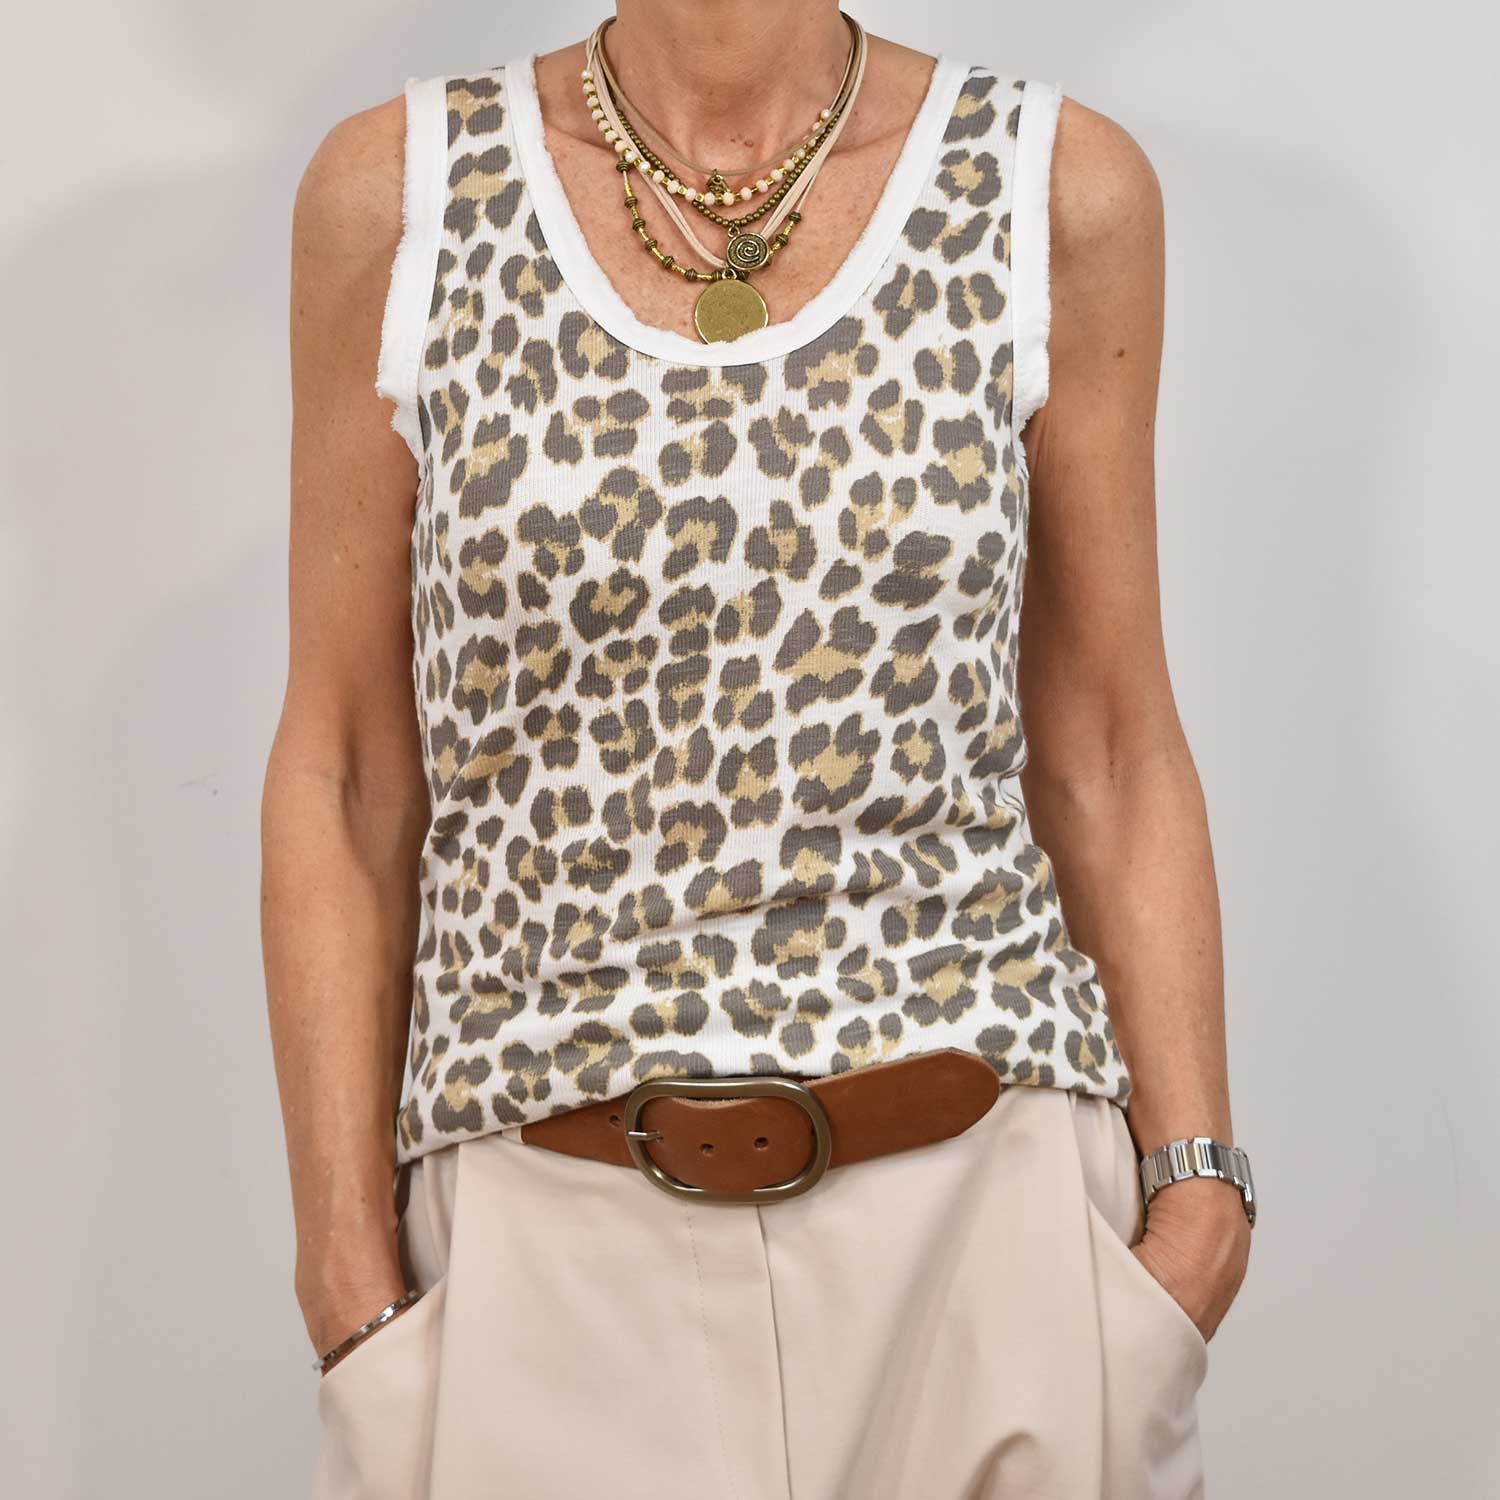 Camiseta leopardo blanca